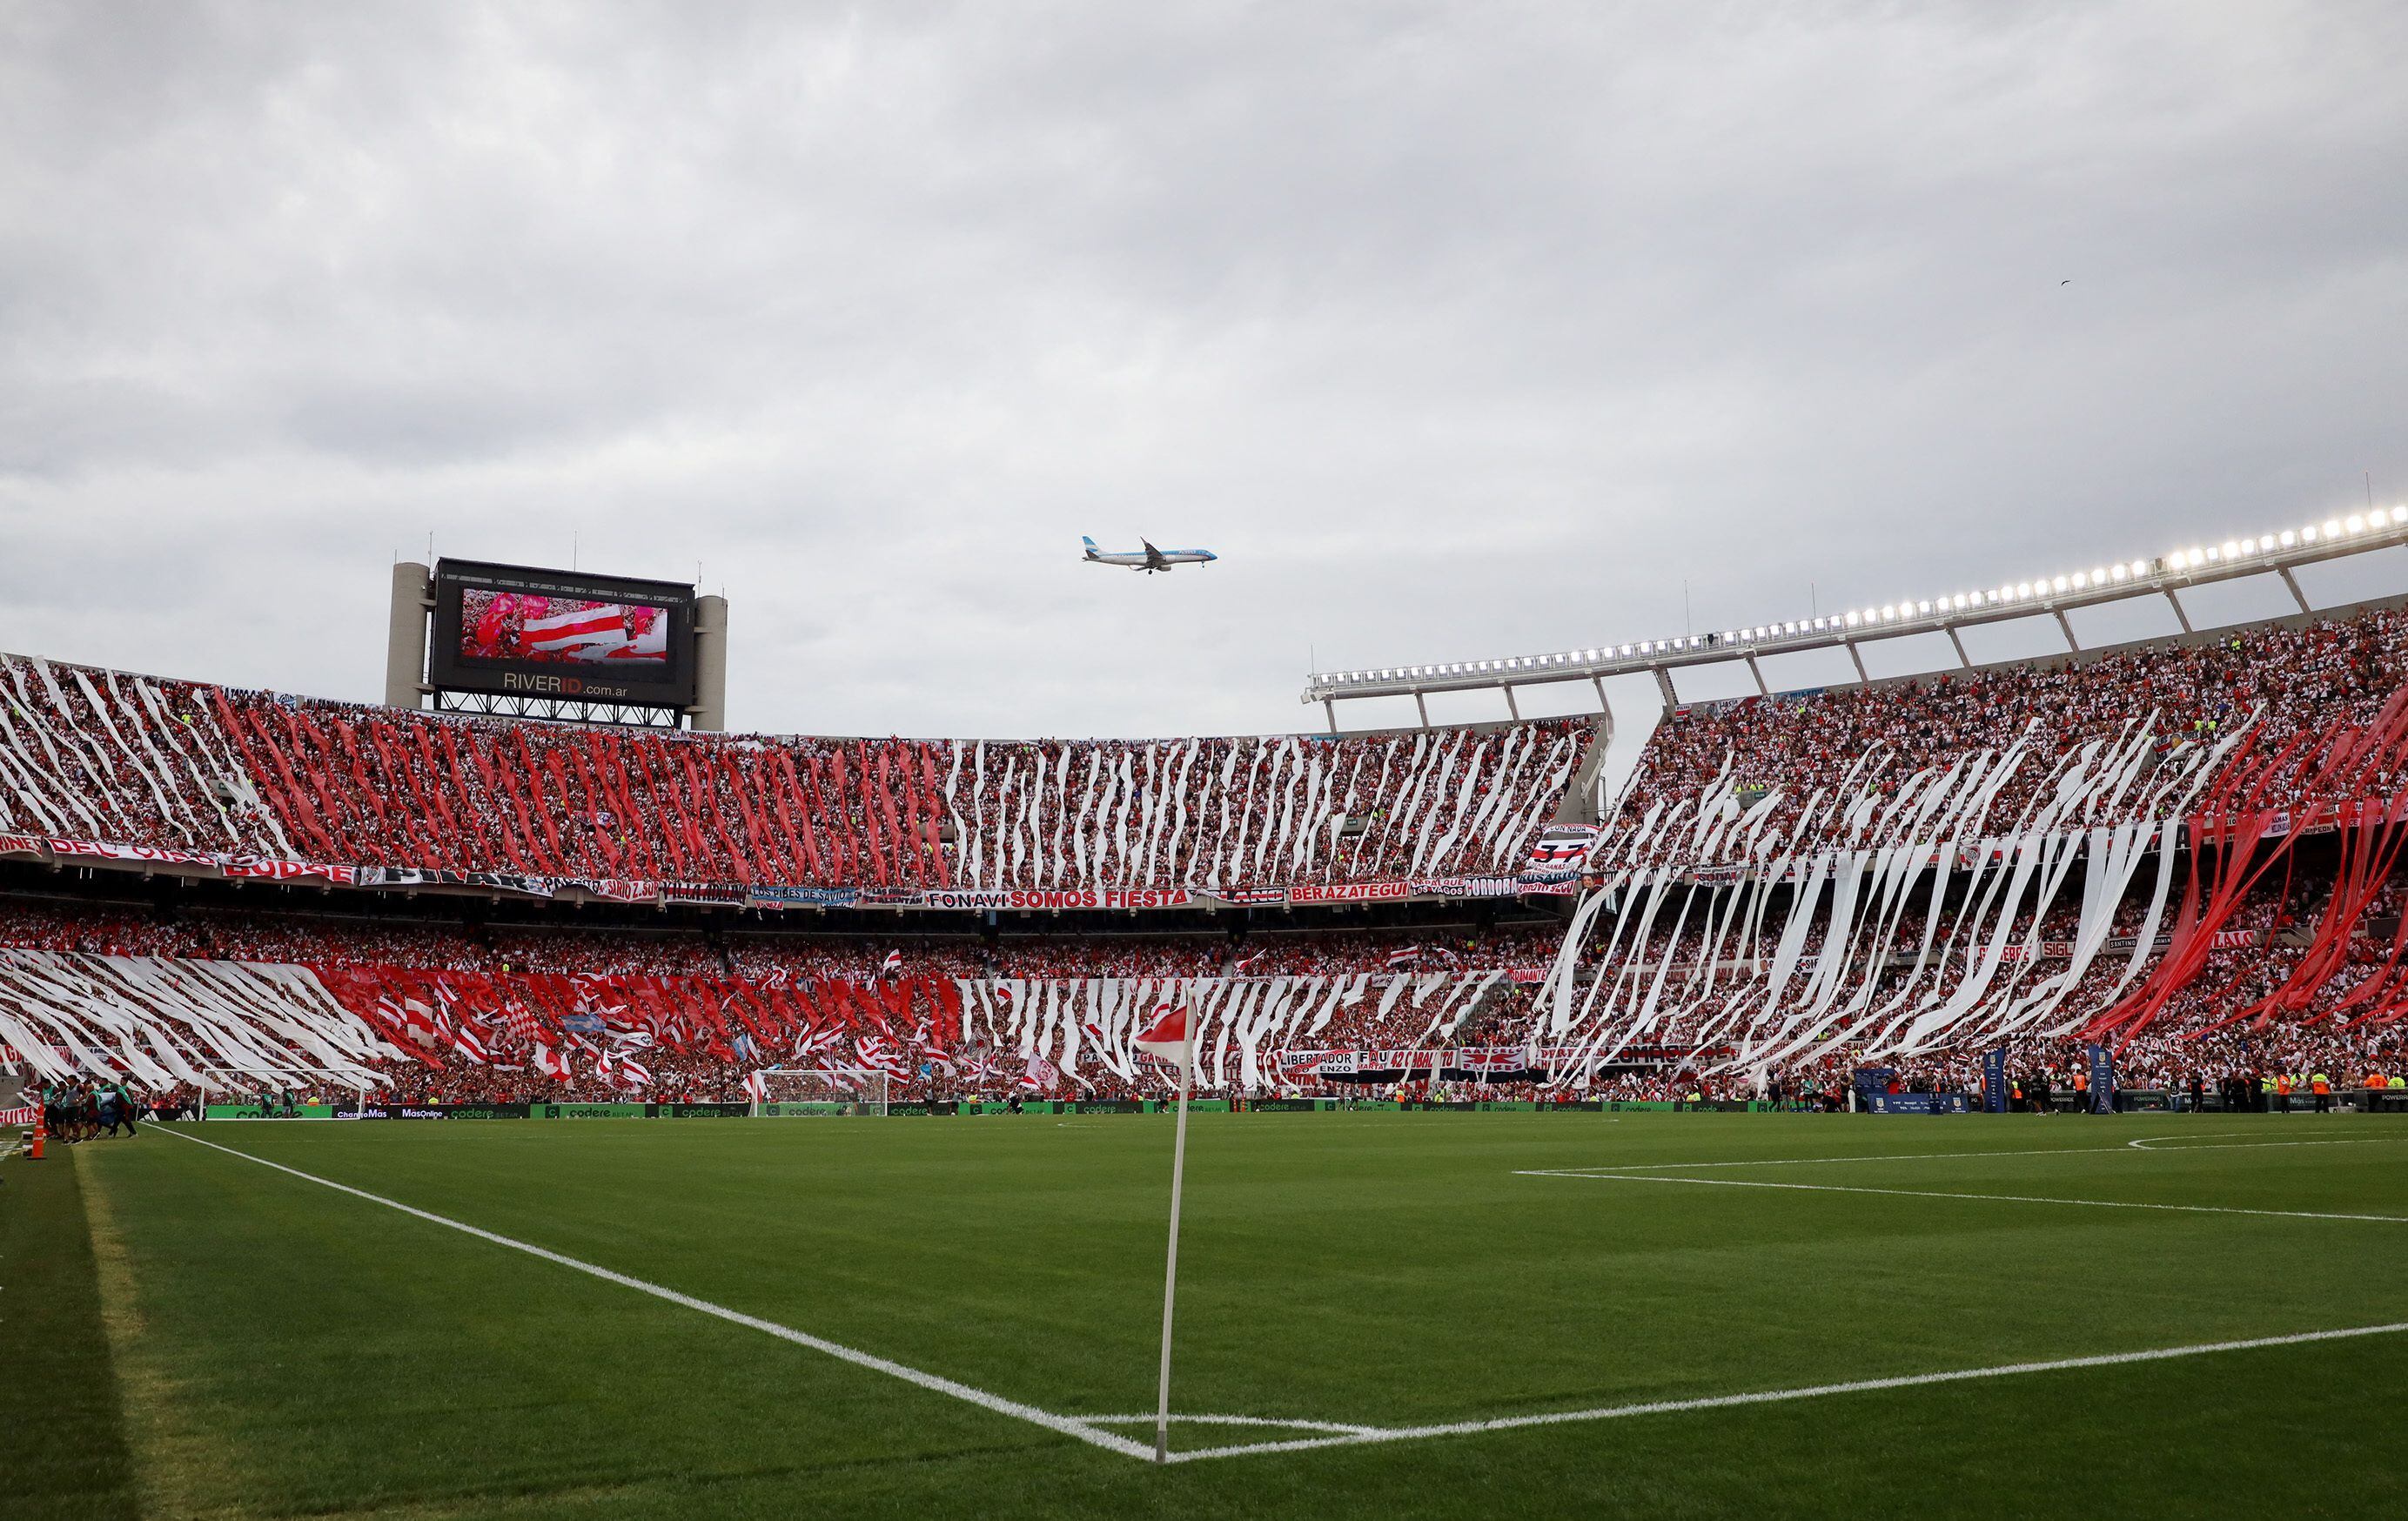 Las clásicas tiras bajaron de las cuatro tribunas del estadio (Foto: REUTERS)